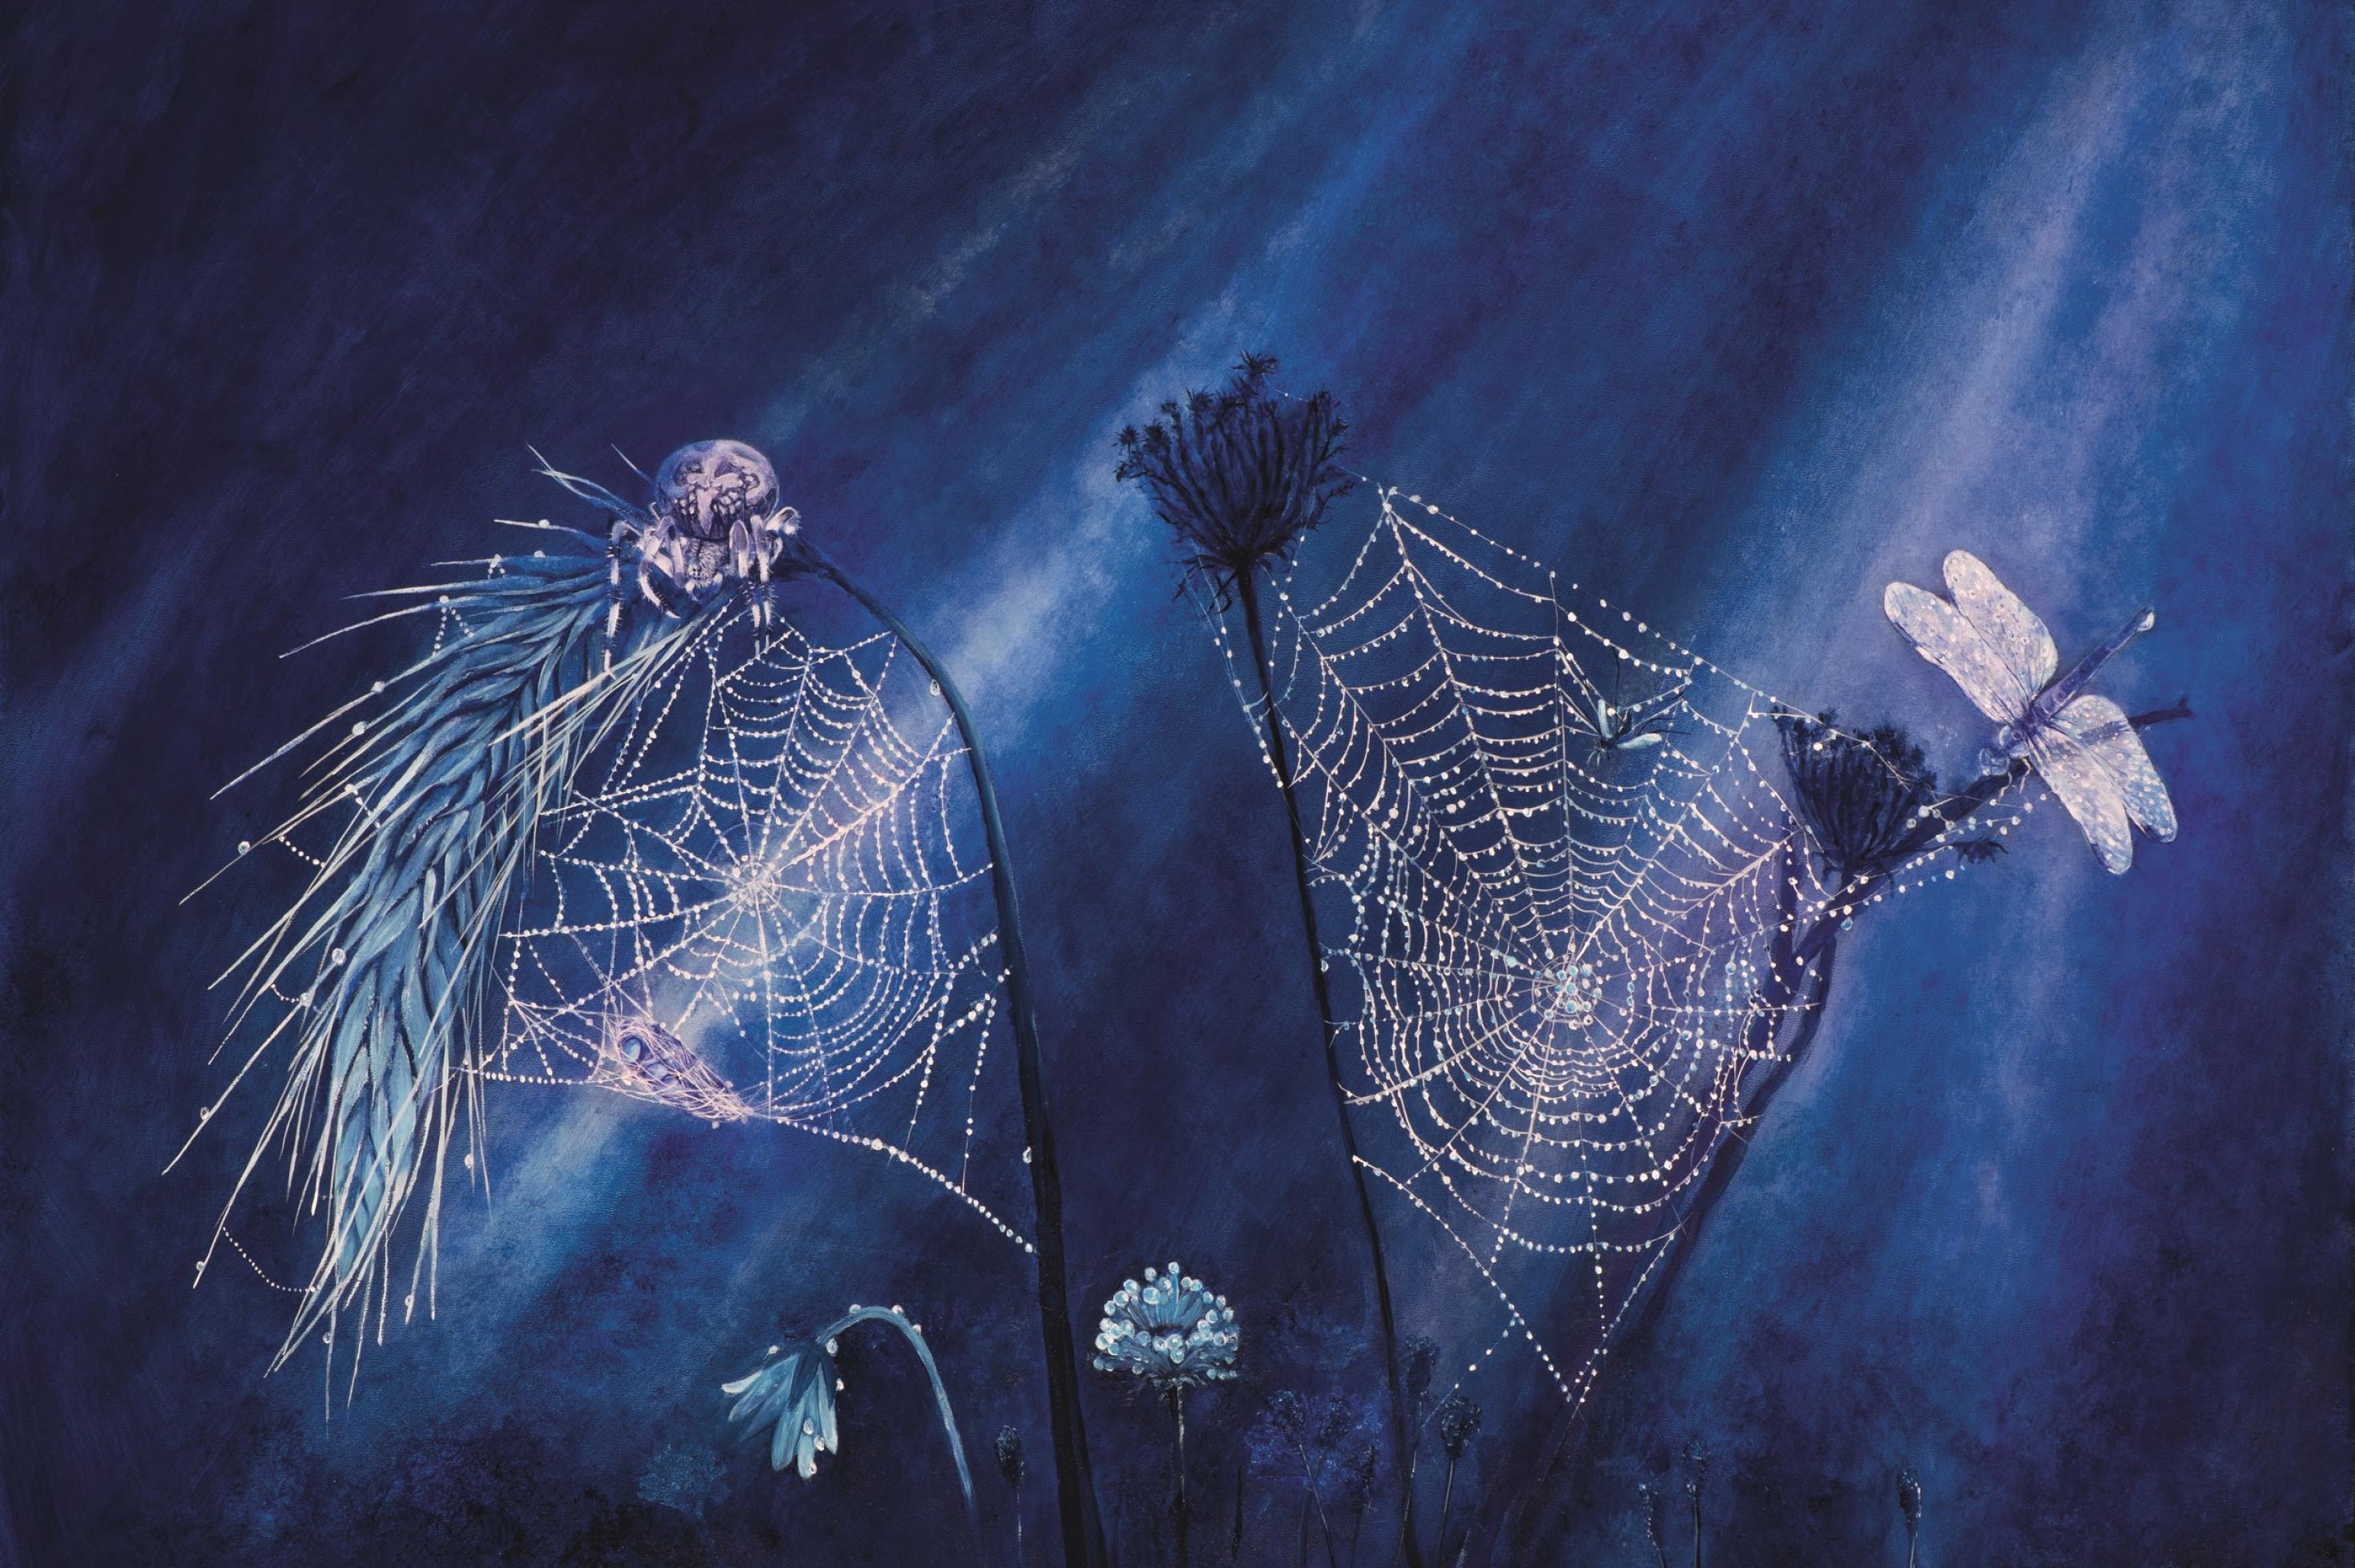 Ein monochrom blaues Ölbild zeigt eine dicke Kreuzspinne, die nachts auf einem Netz sitzt, das sie gerade webt.